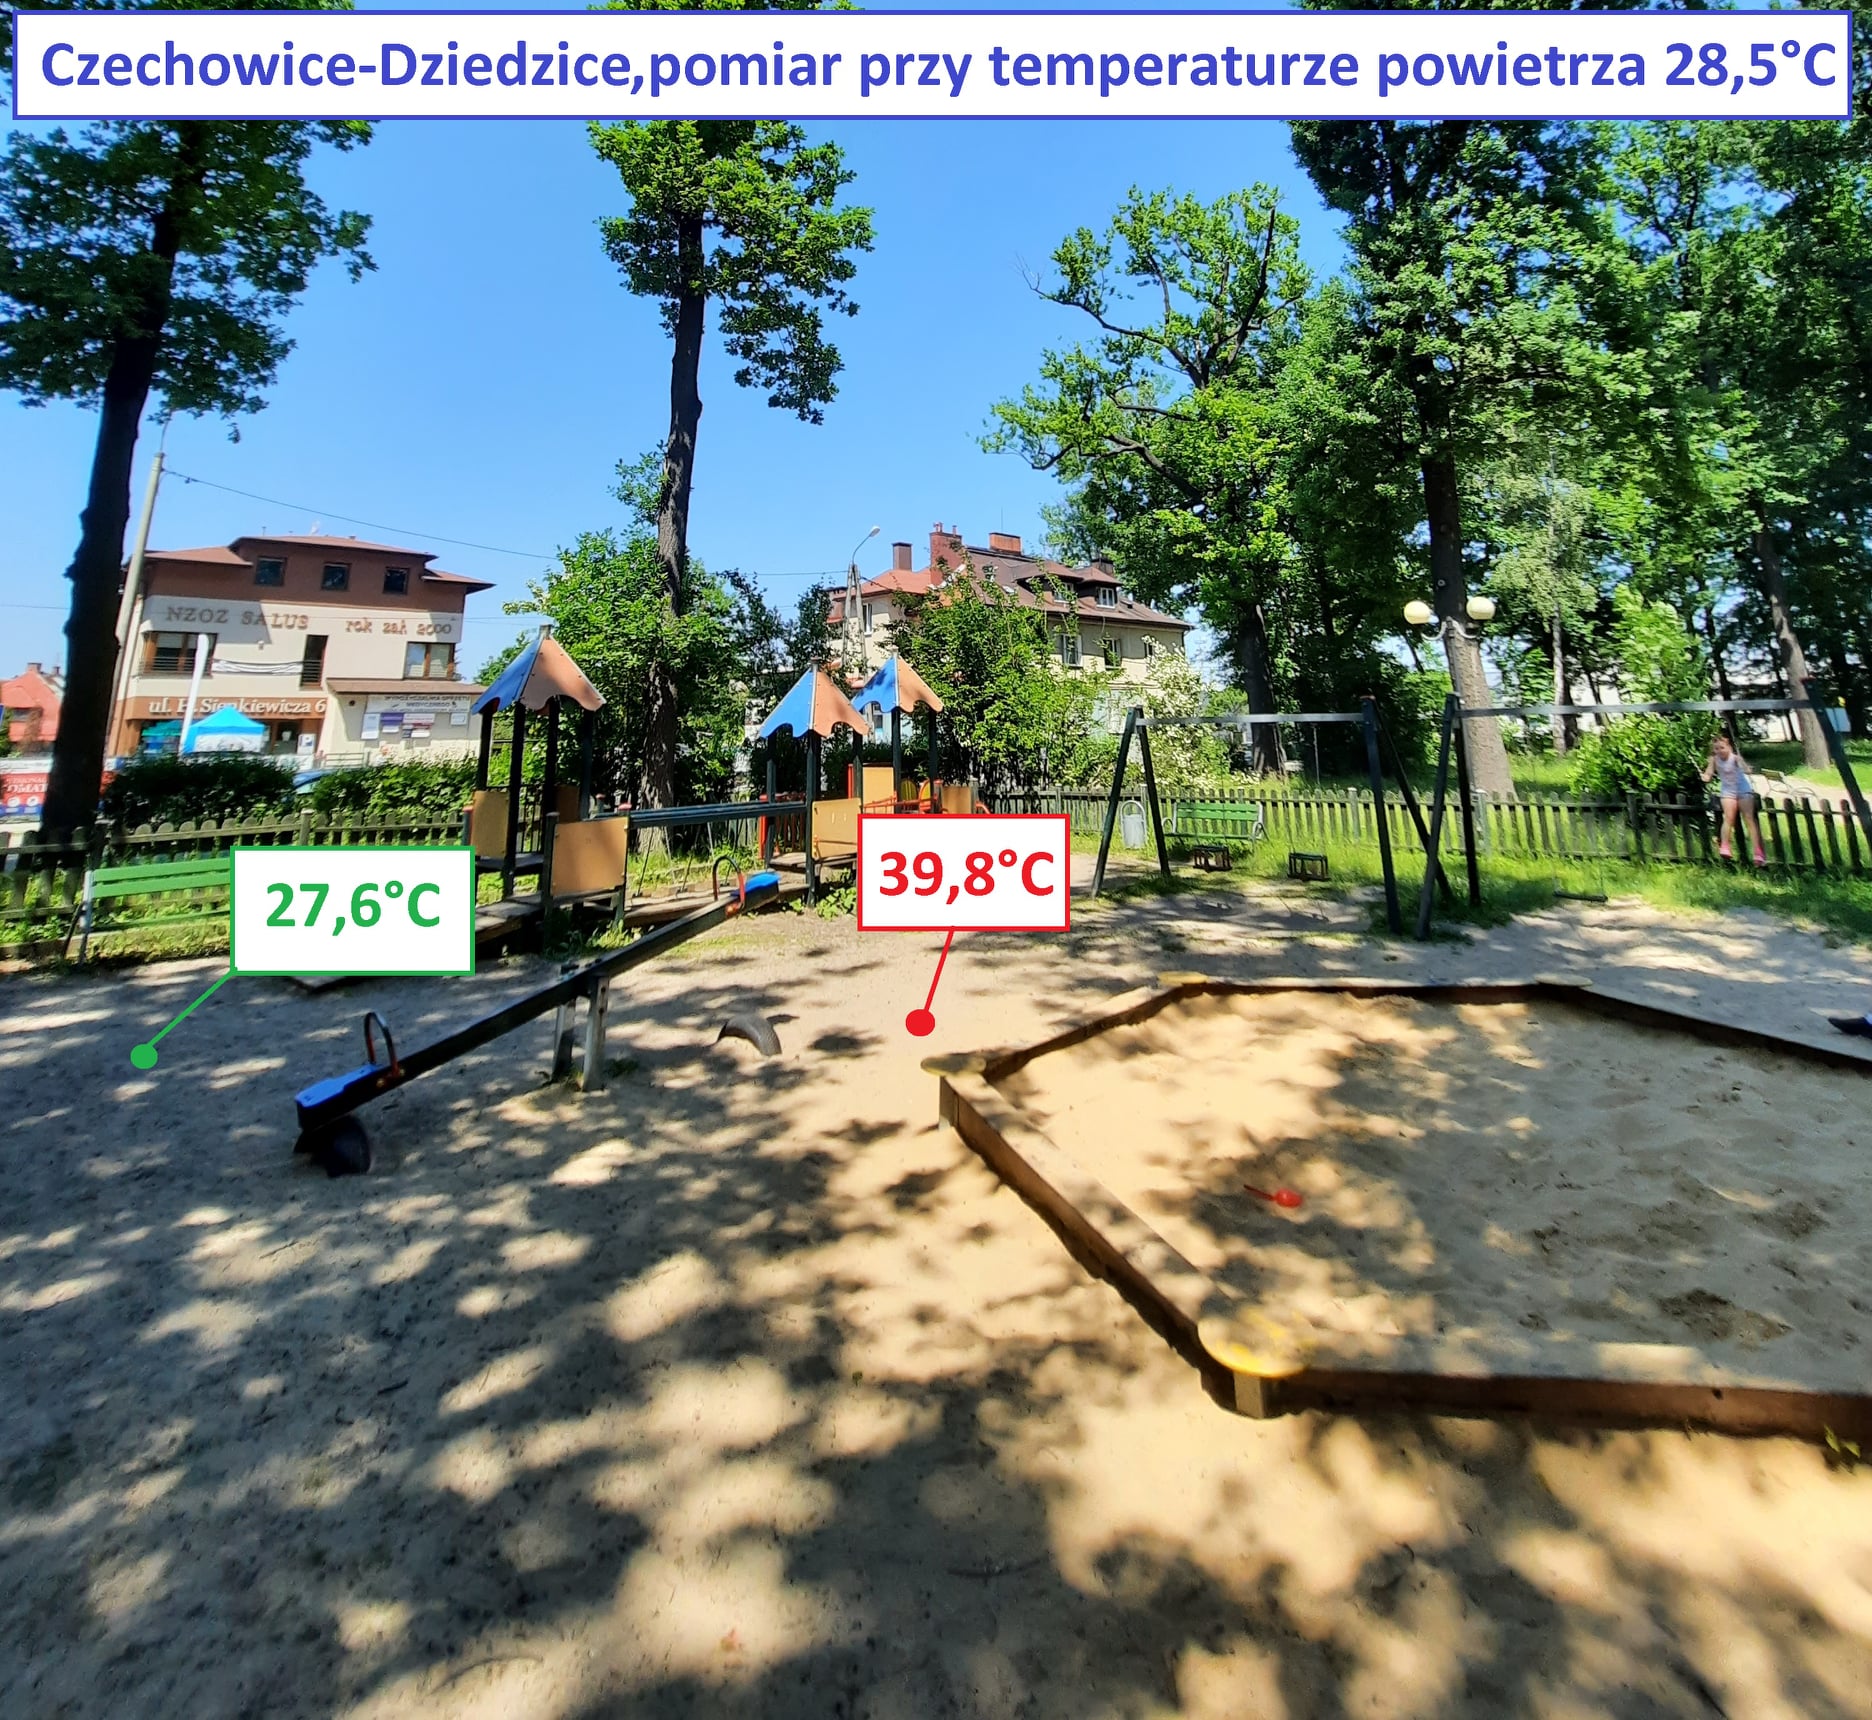 Польські активісти у спеку виміряли температуру поверхонь в місті. Результати здивували навіть їх самих